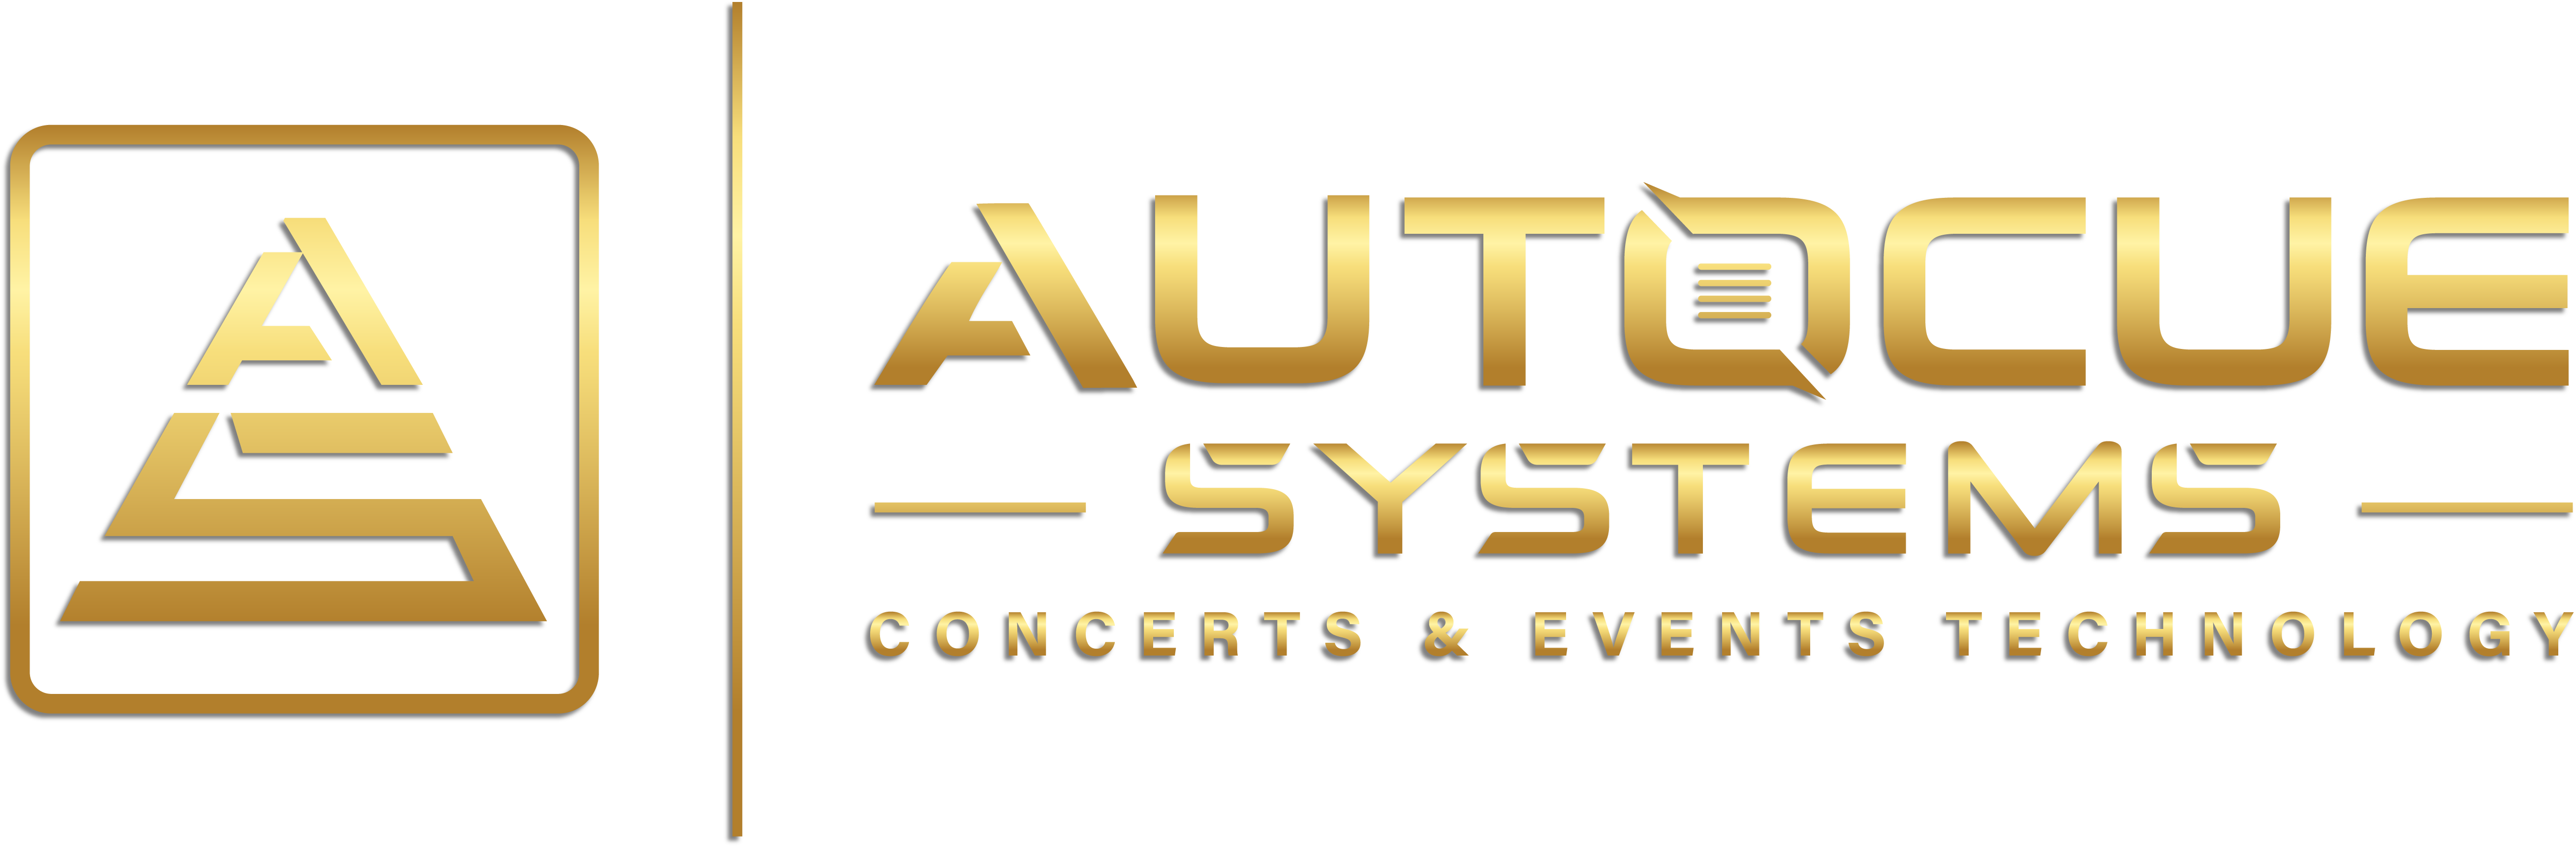 AutoCue Systems Logo Golden Version Transparent